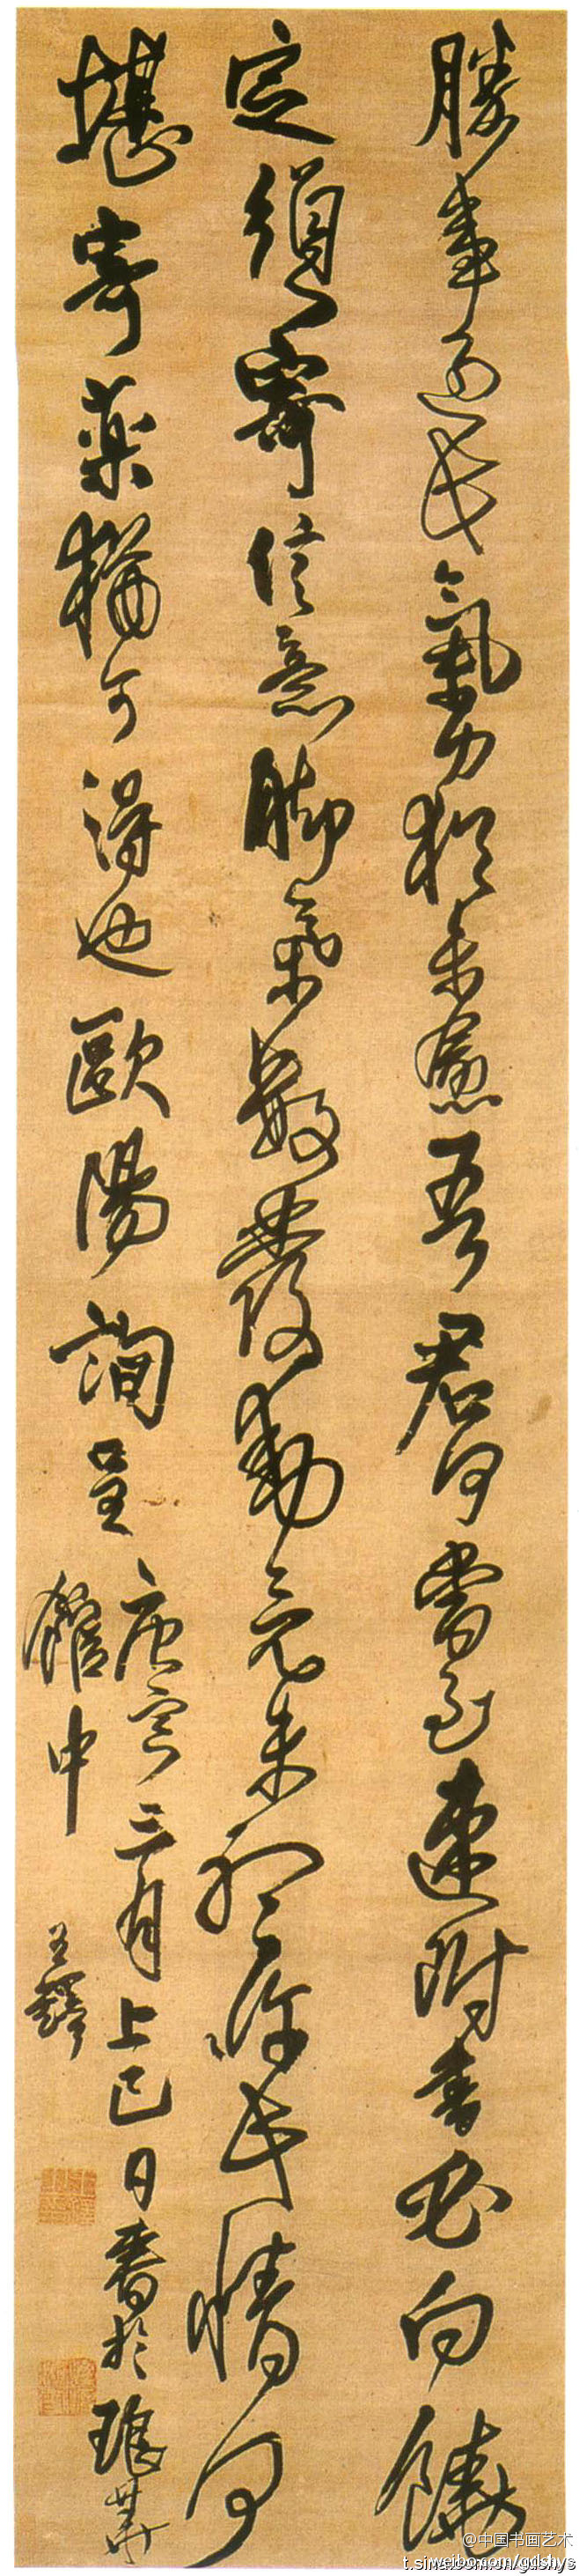 日本人对王铎的书法极其欣赏,还因此衍生成一派别,称为"明清调.